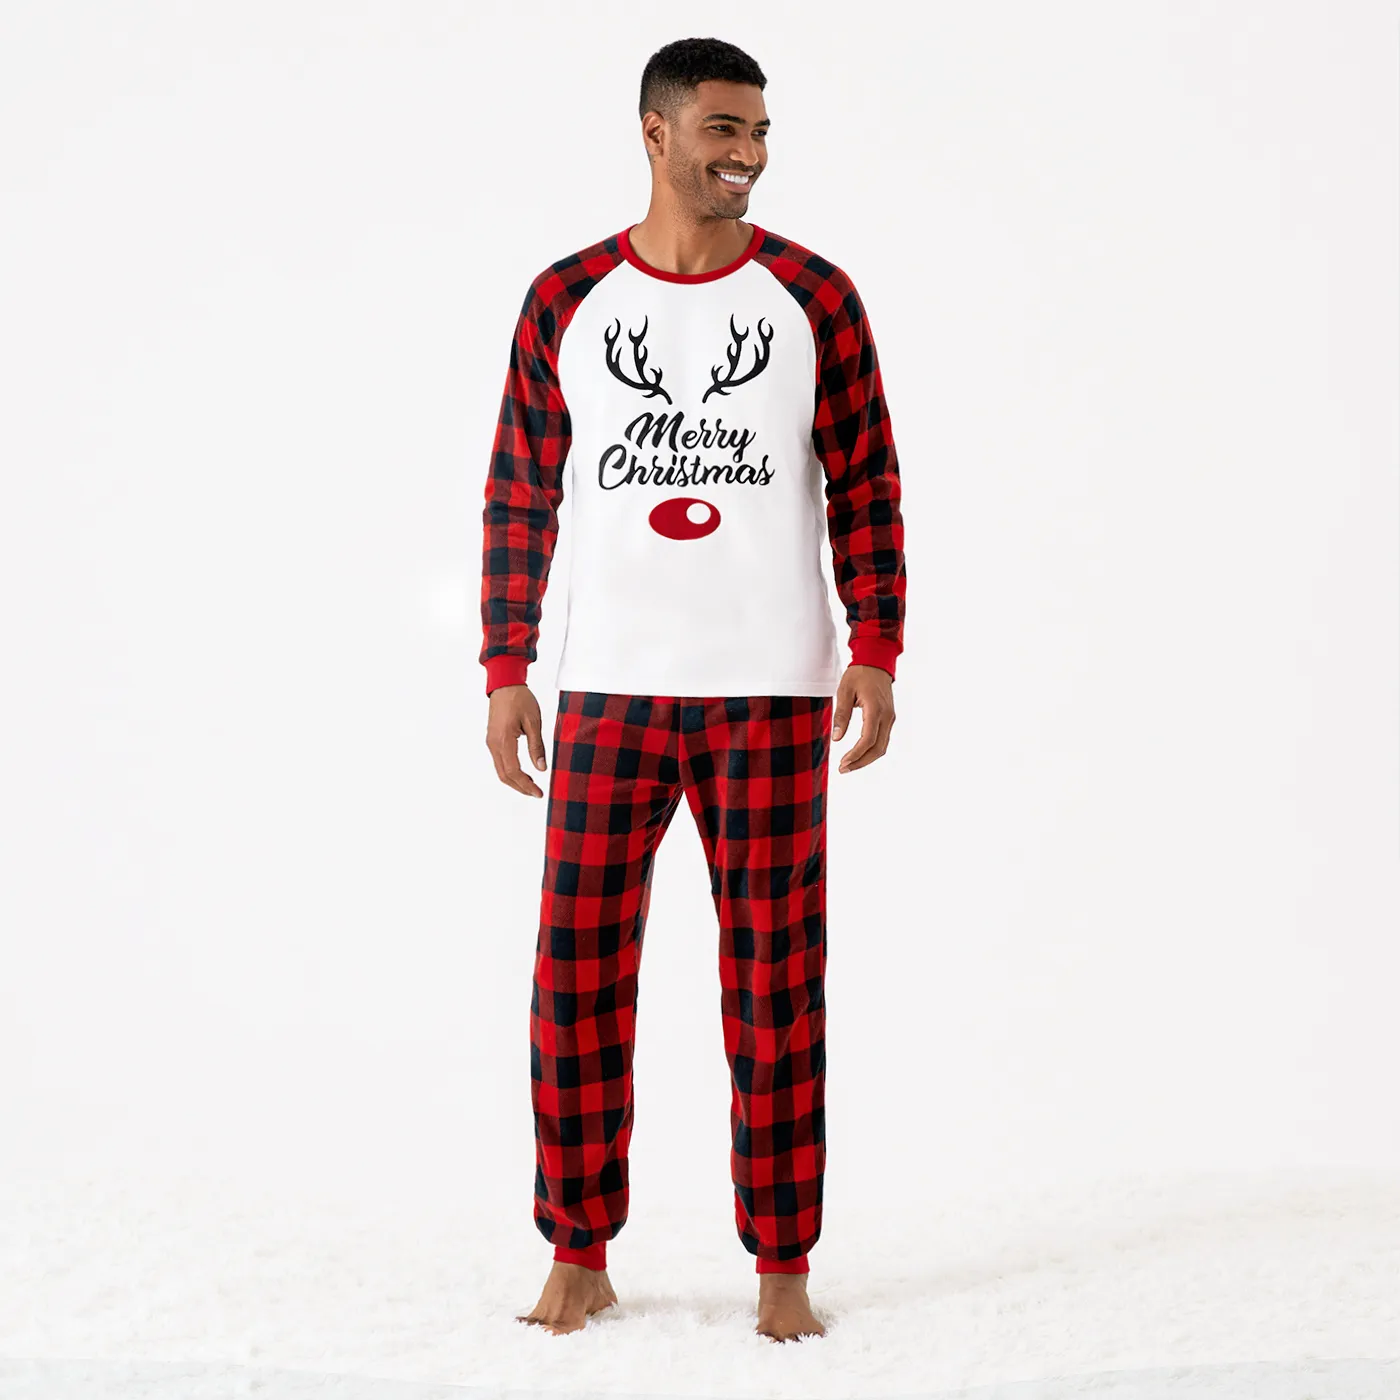 Christmas Reindeer Print Plaid Long-sleeve Family Matching Fleece Pajamas Sets (Flame Resistant)